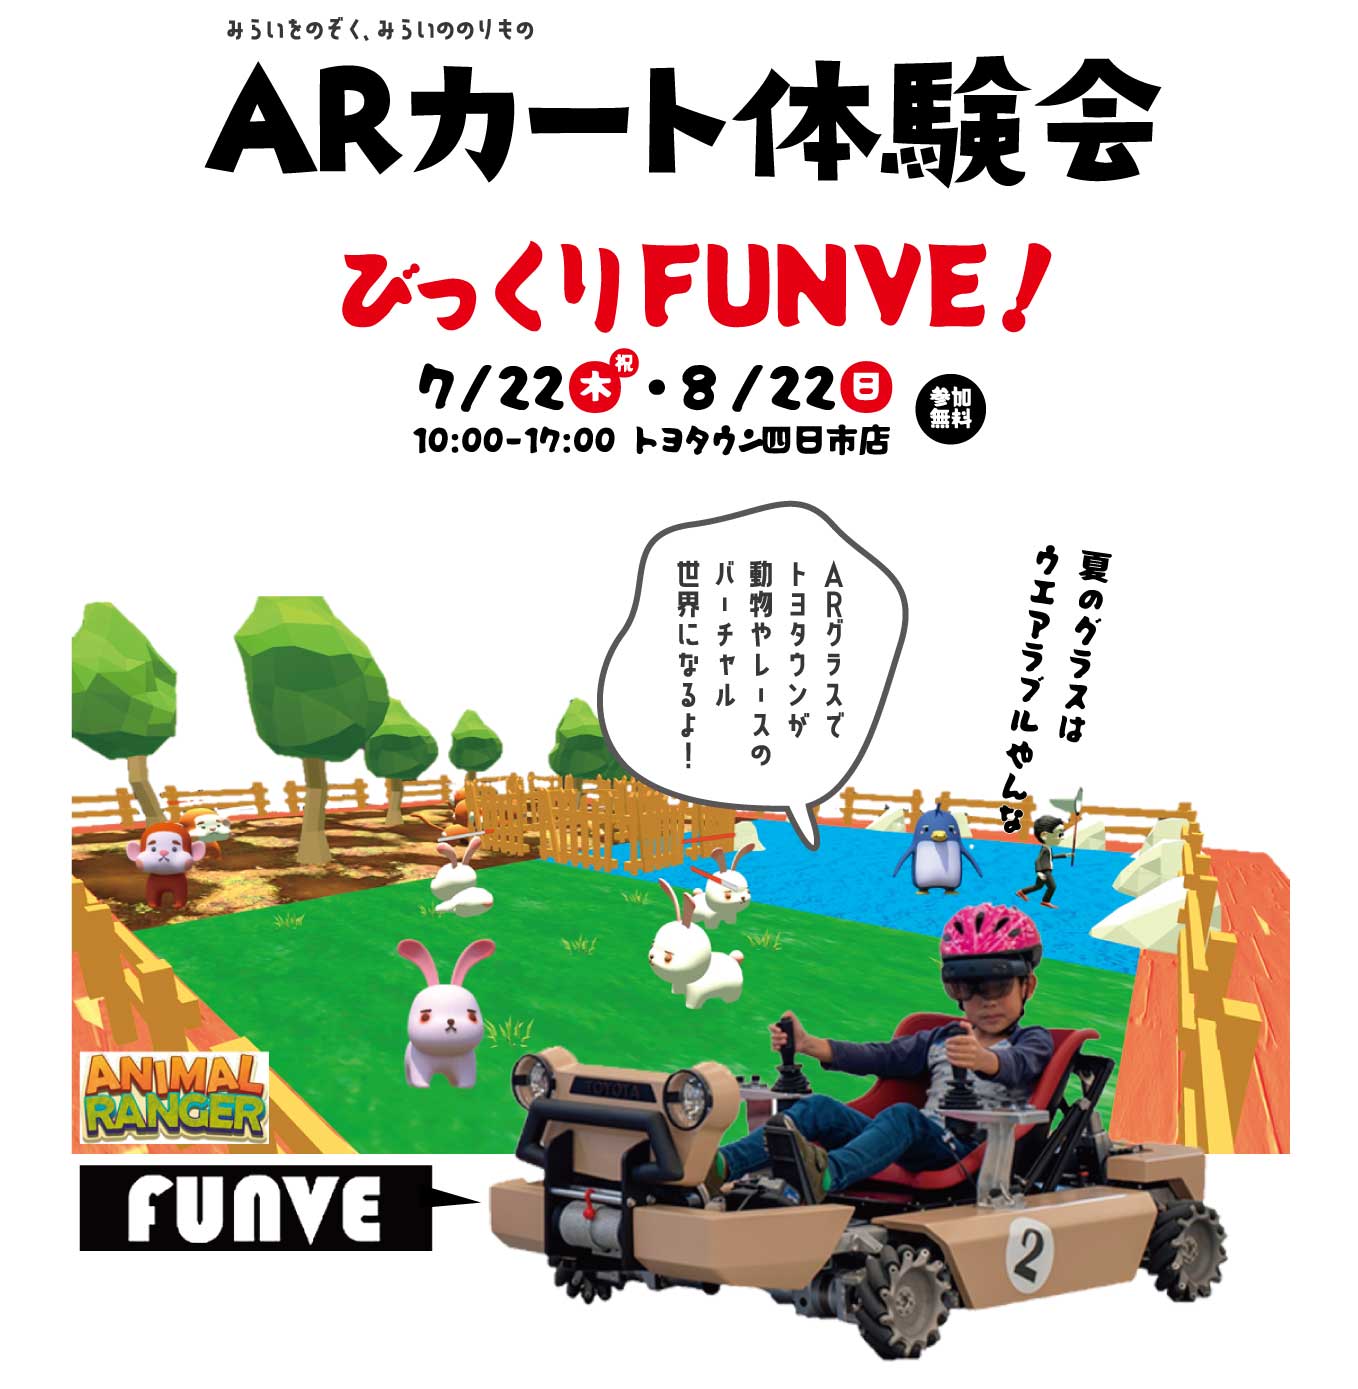 ARでゲームができるARカート体験会「びっくりFUNVE!」をトヨタウン四日市店で開催